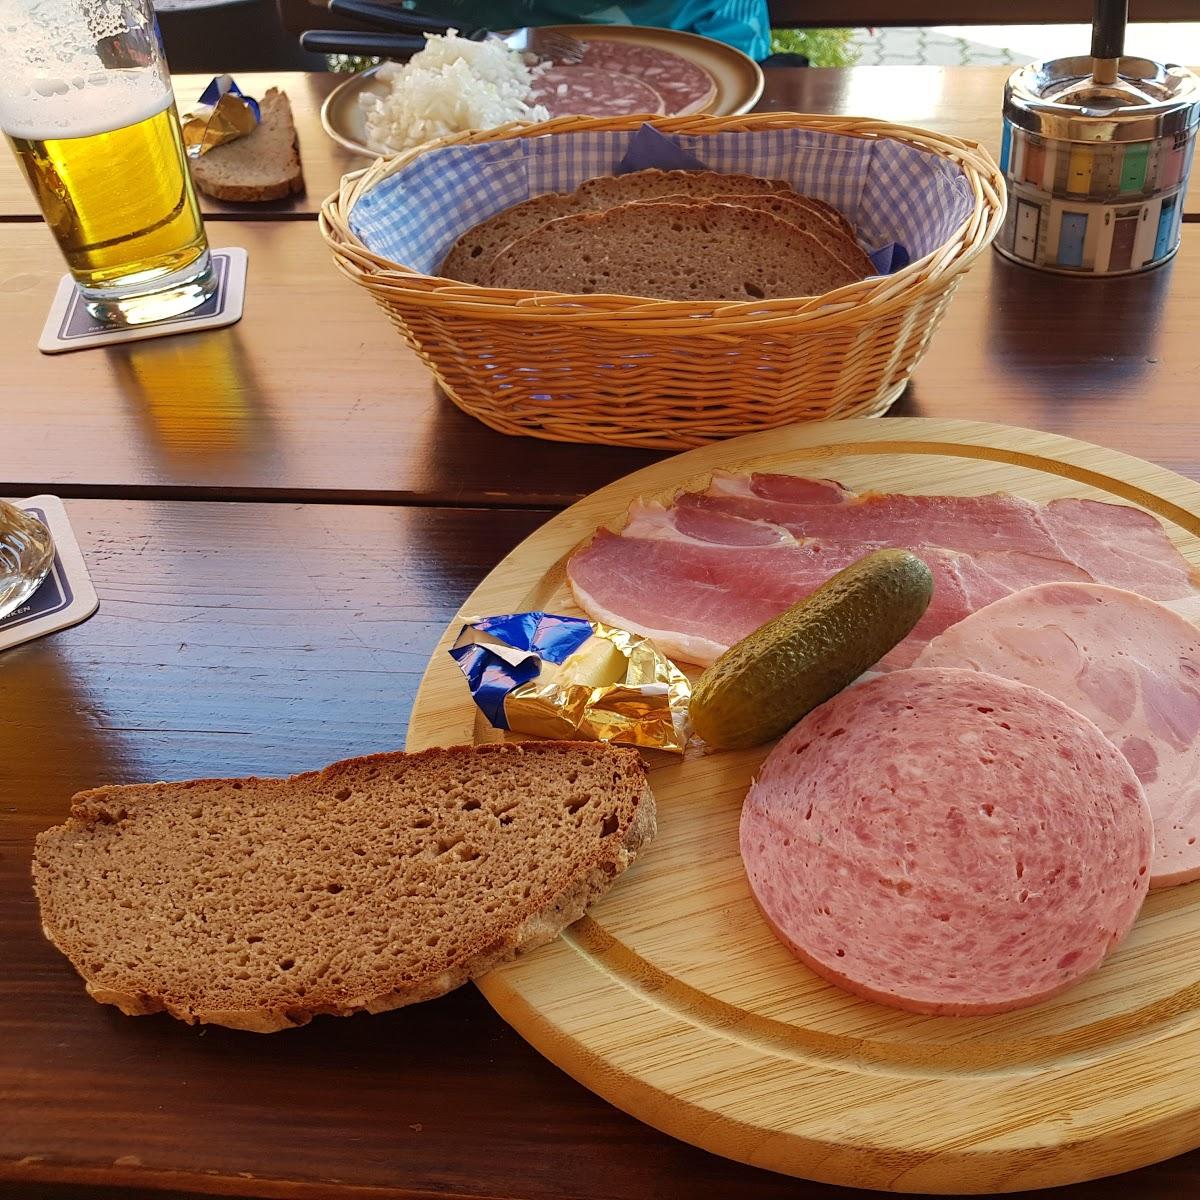 Restaurant "Gasthaus Zandtbachtal- Fränkische Brotzeiten" in Lichtenau